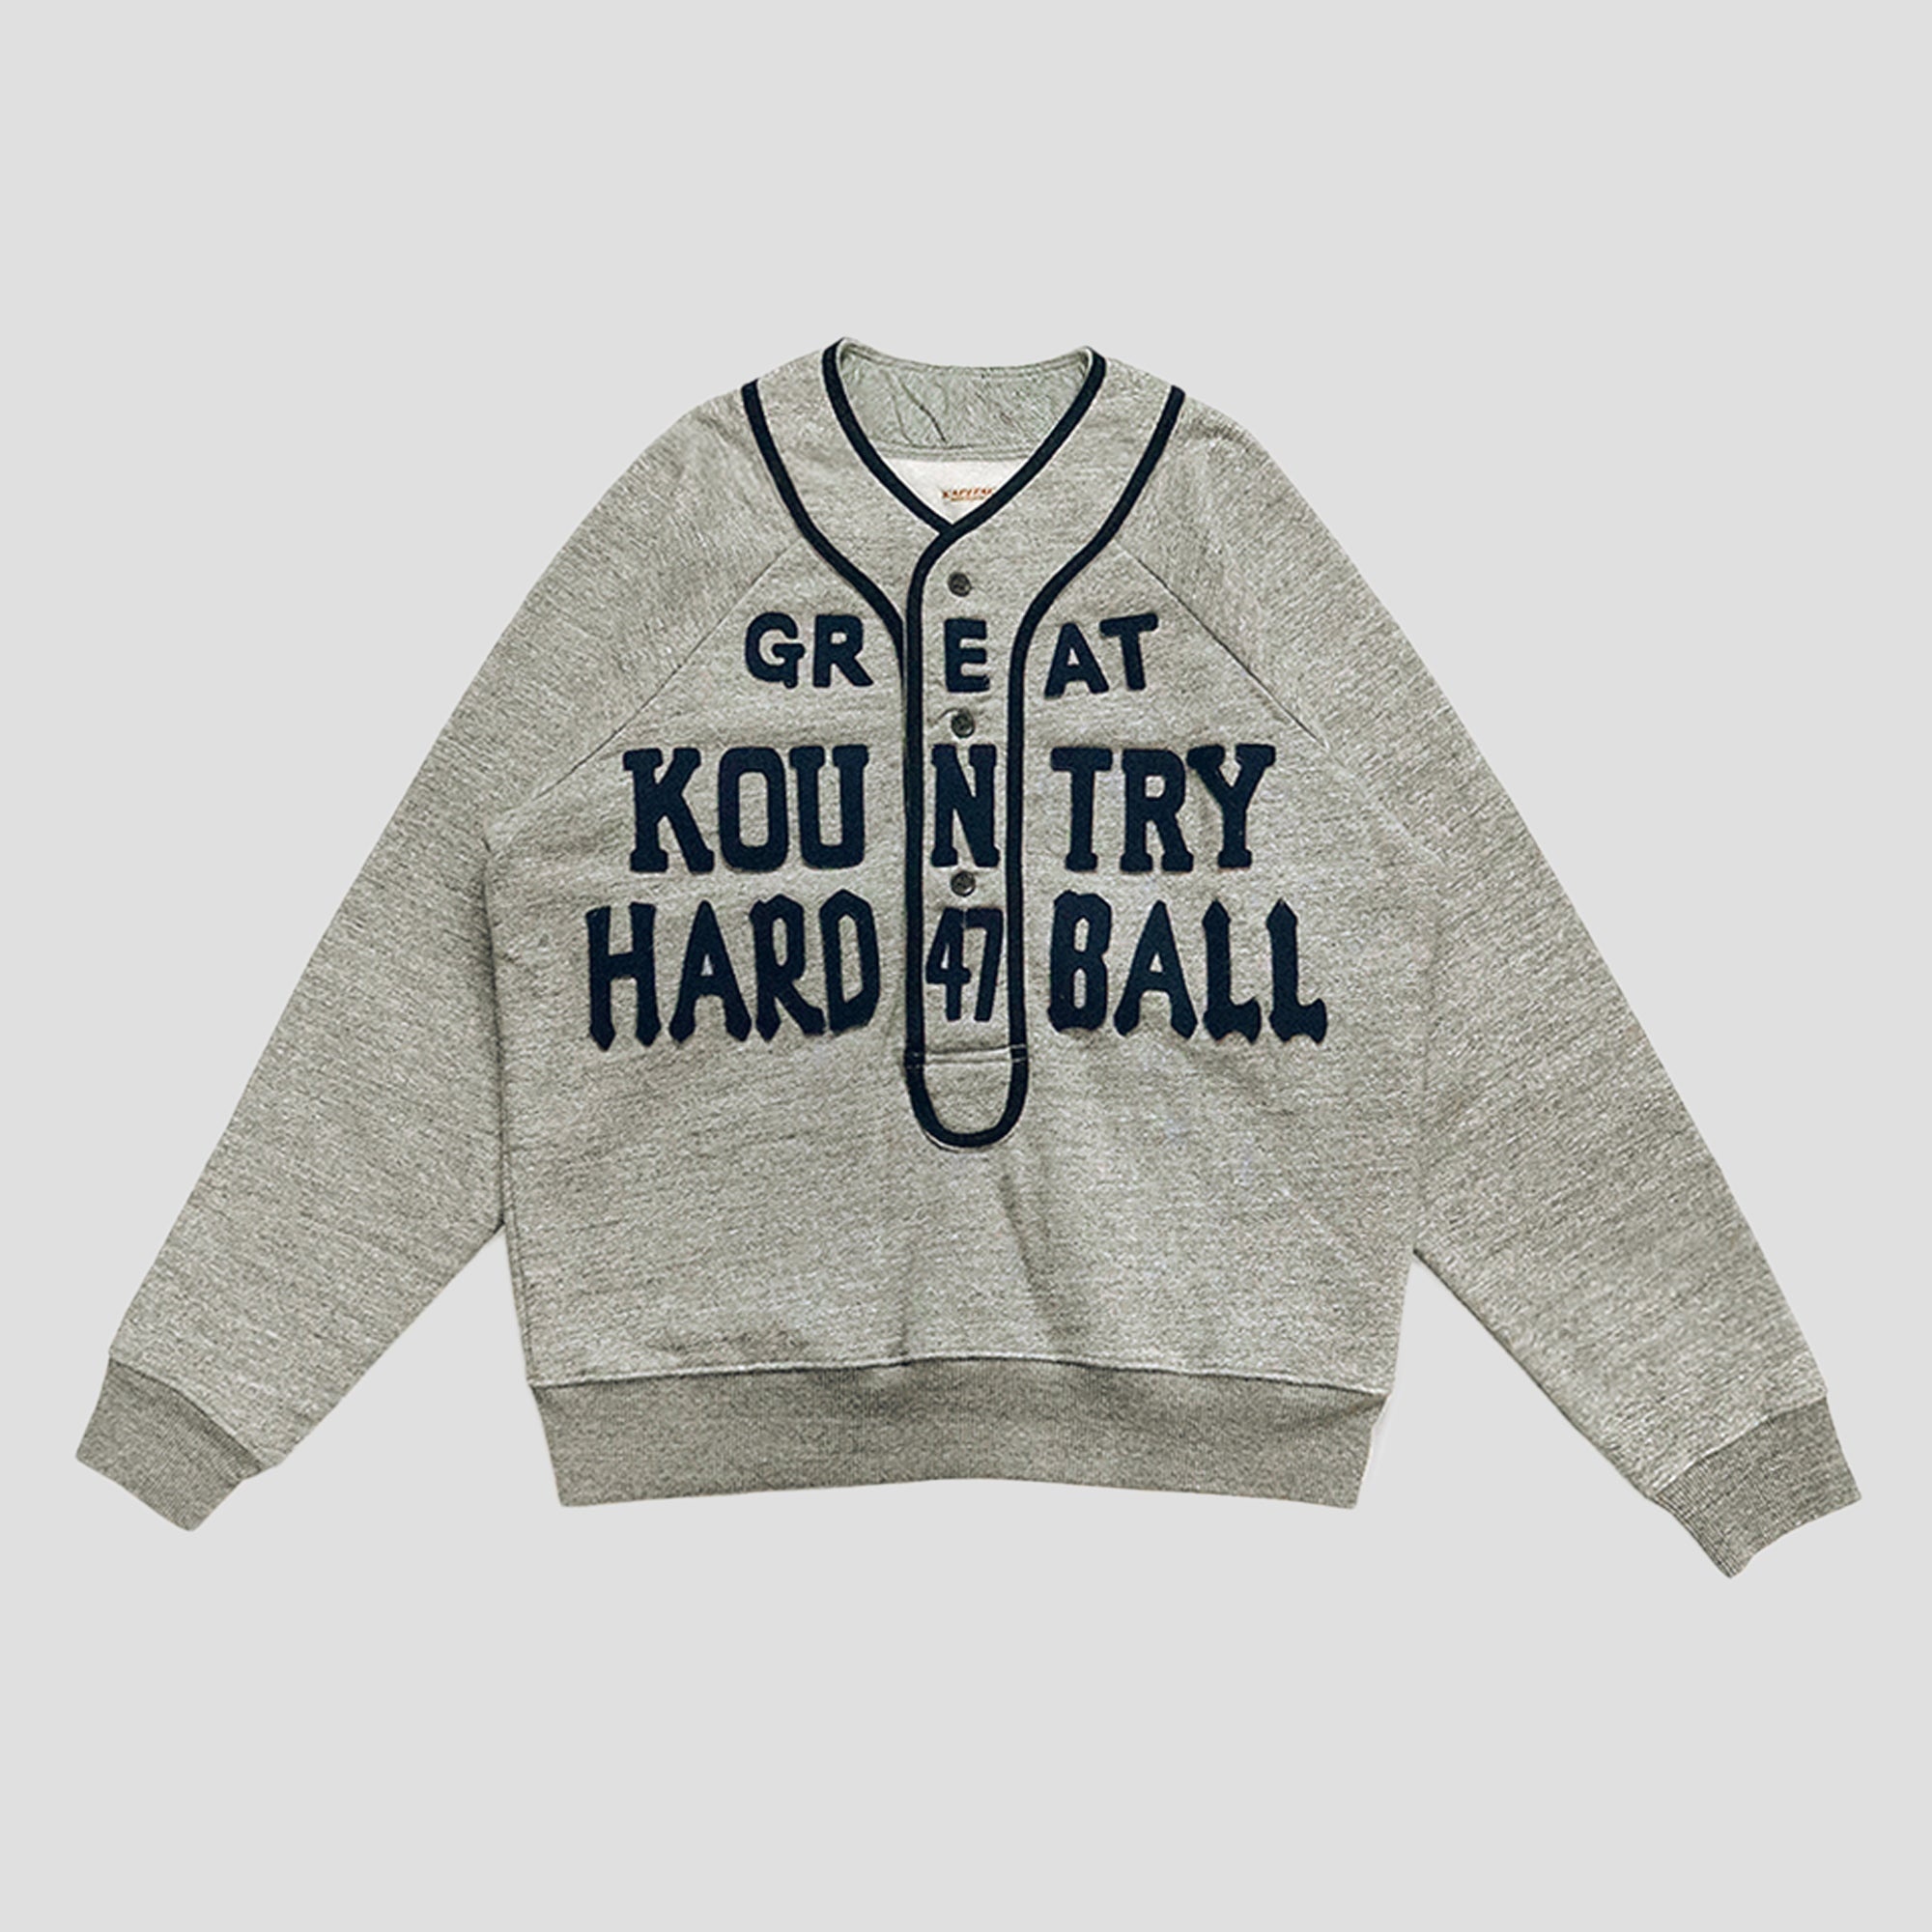 JERSEY BASEBALL HENLEY SWEAT SHIRTS - 1